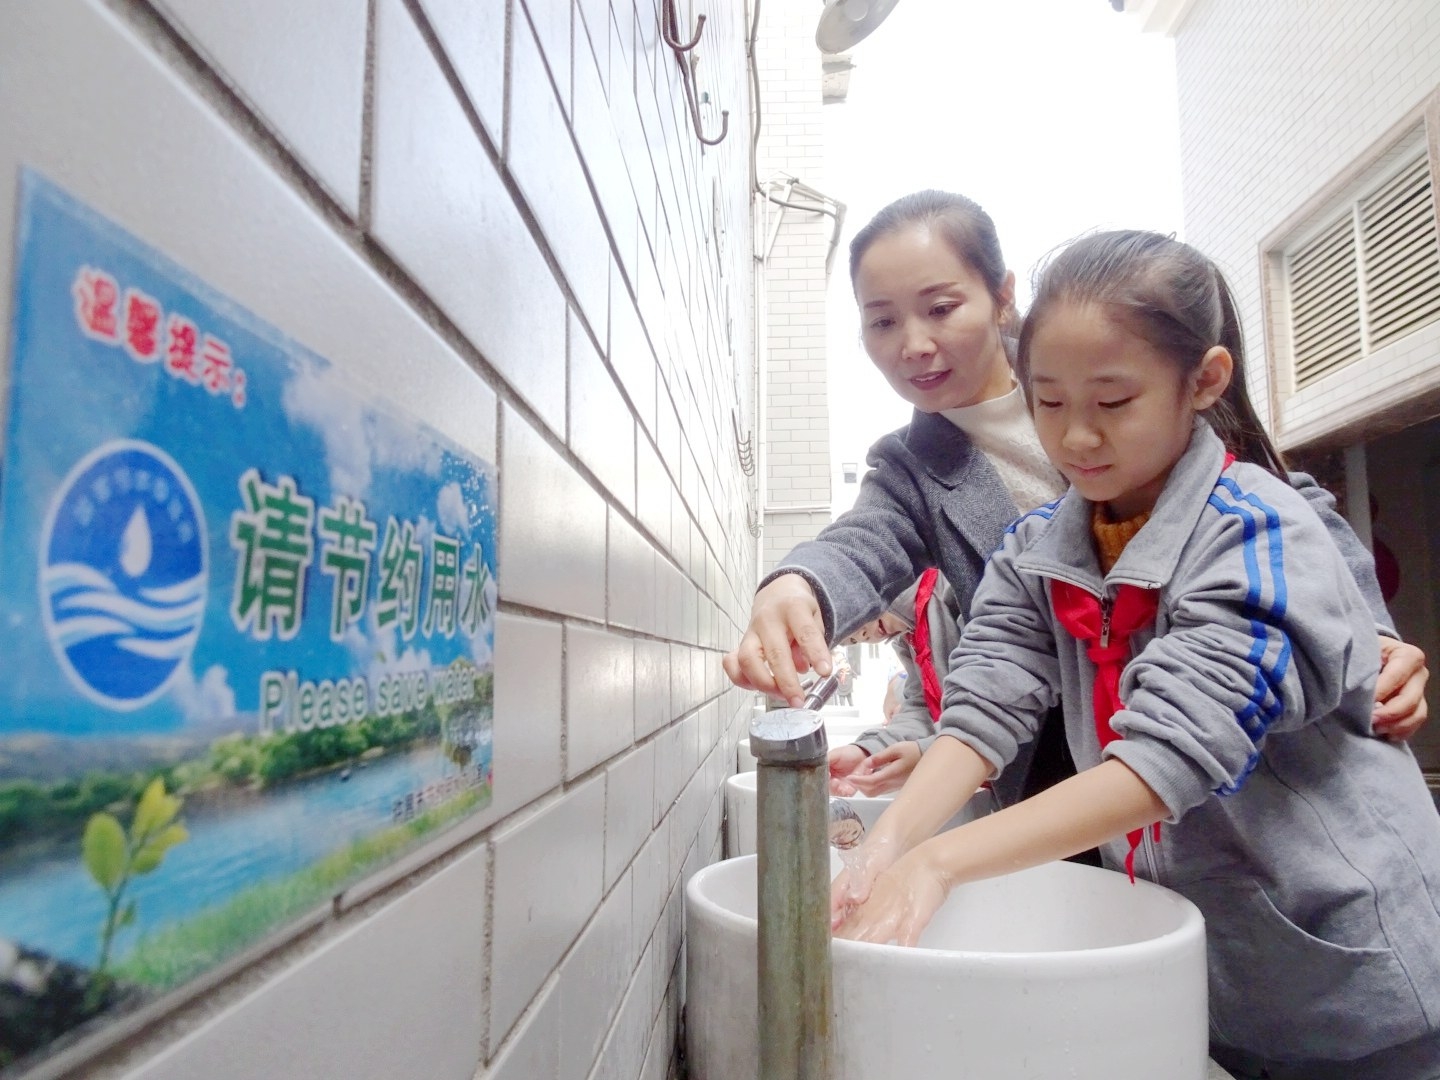 10月17日,市节约用水办公室工作人员董淑敏在为孩子演示水龙头正确的